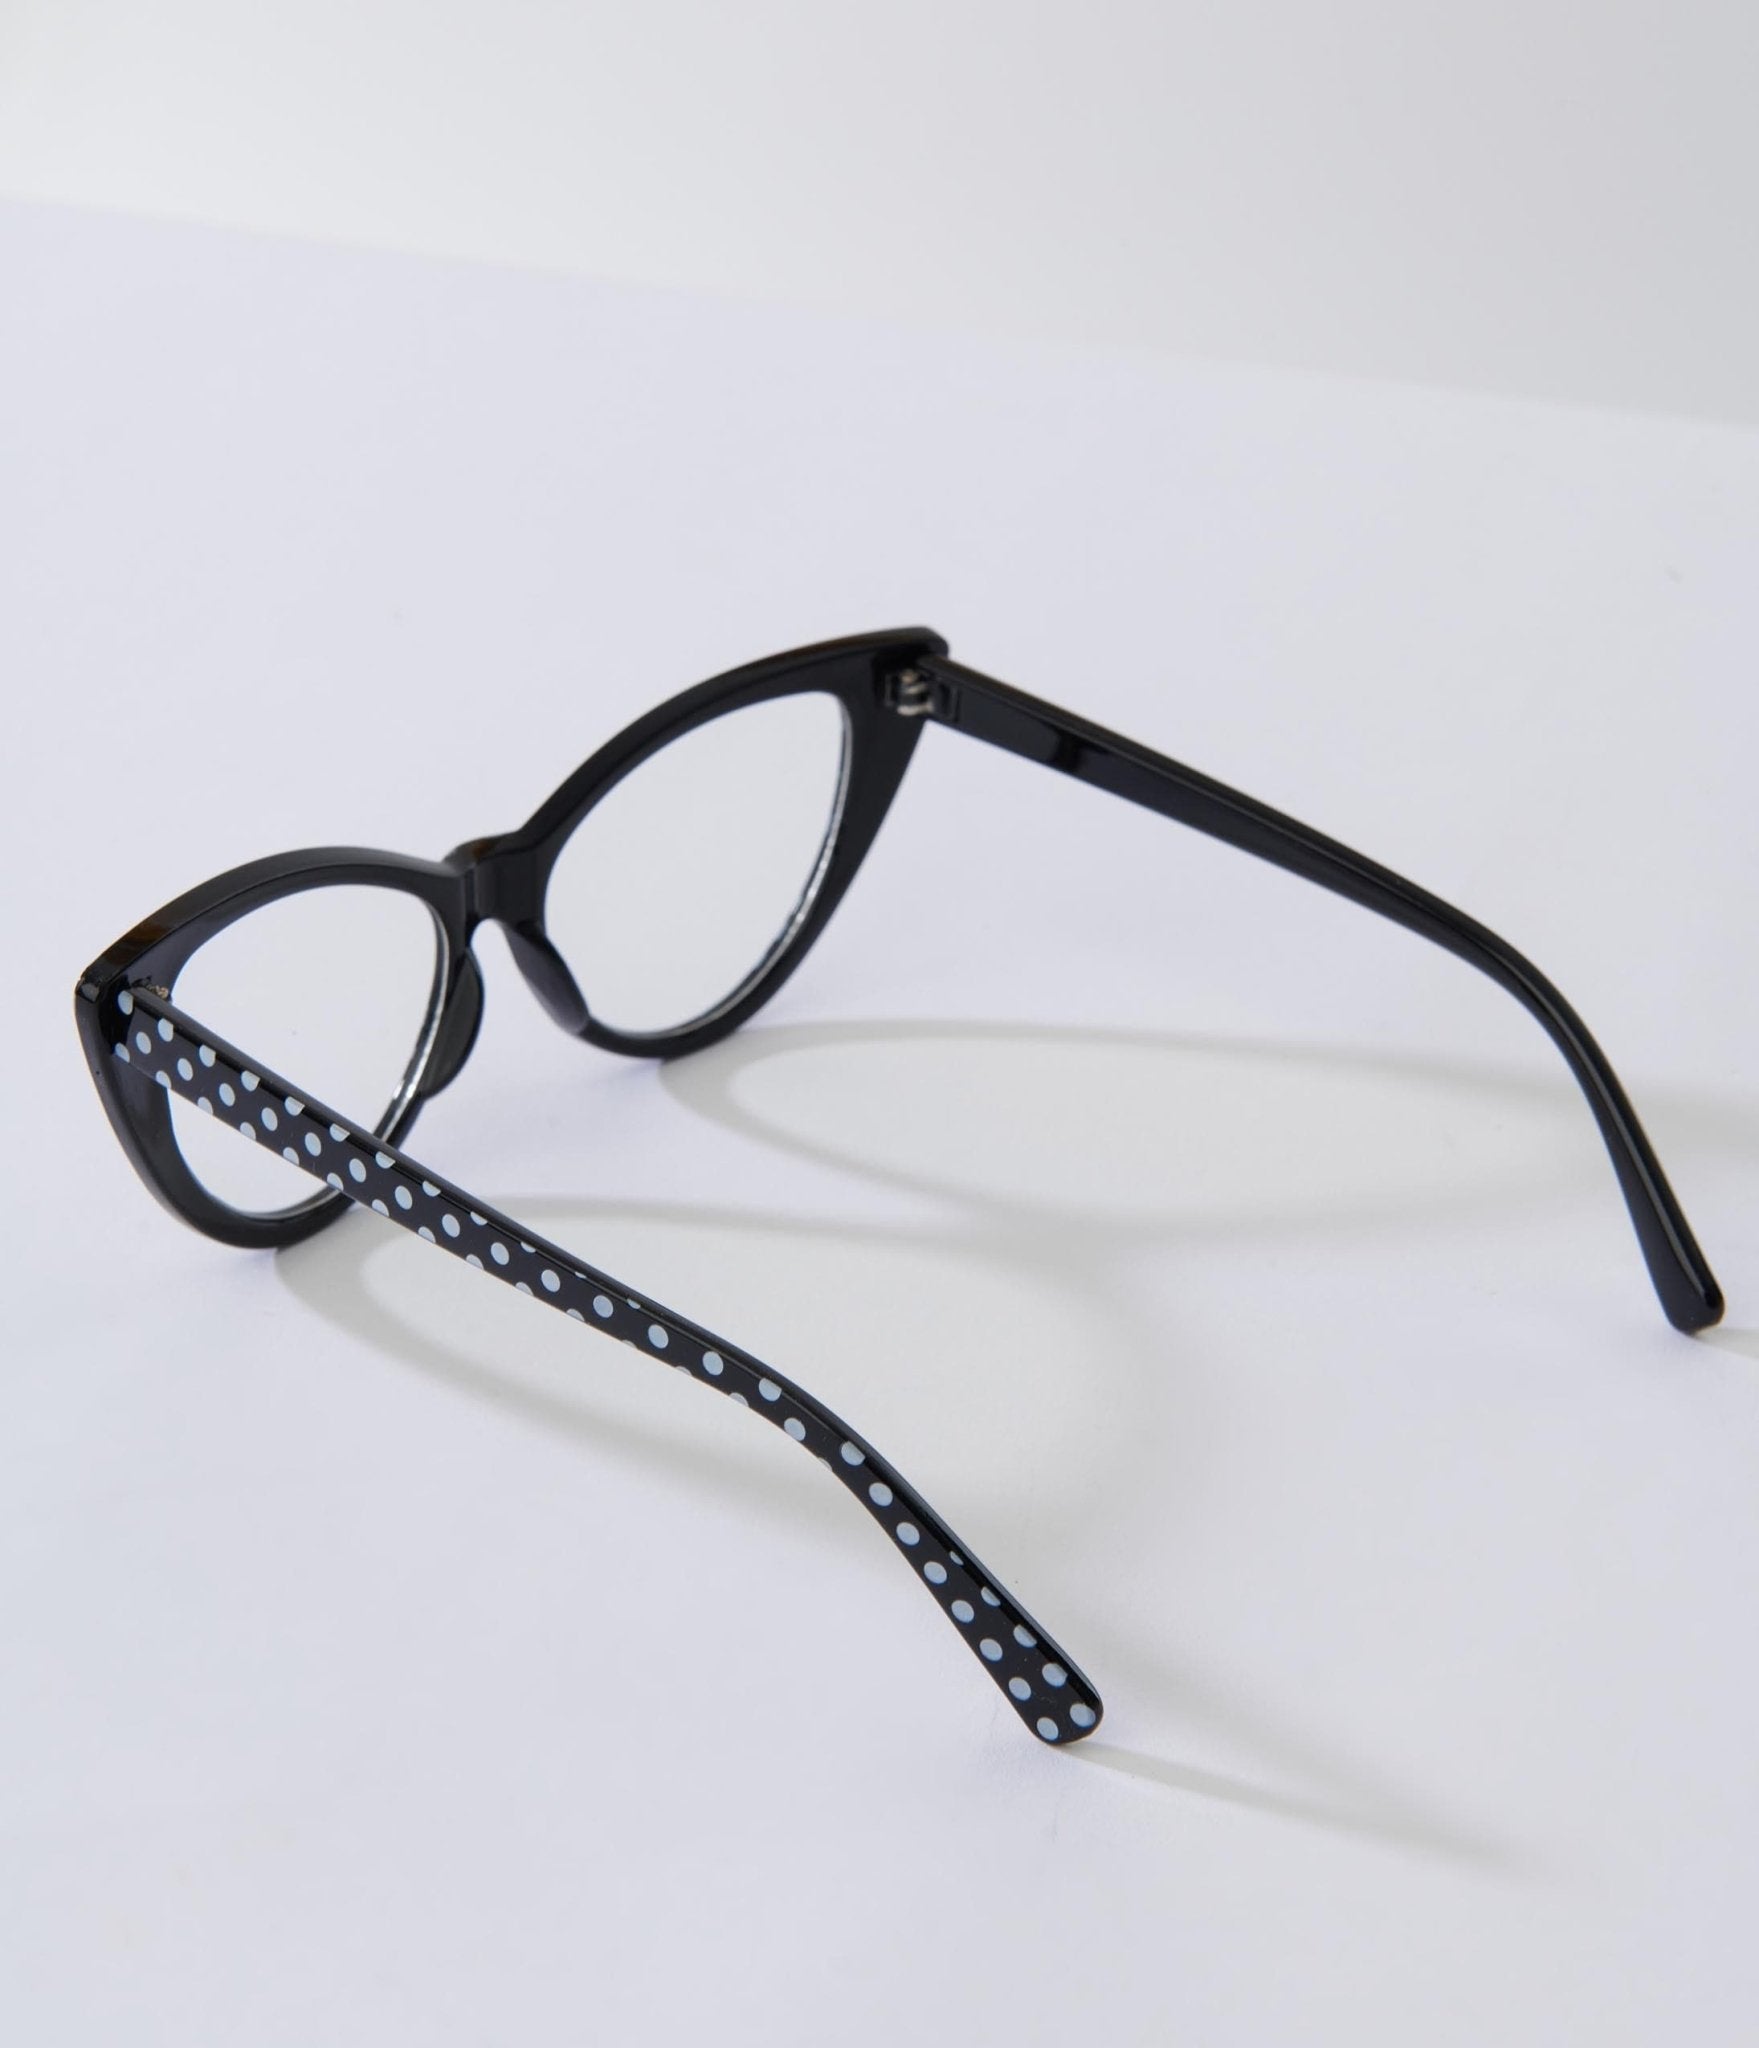 Black & White Polka Dot Cat Eye Glasses - Unique Vintage - Womens, ACCESSORIES, SUNGLASSES